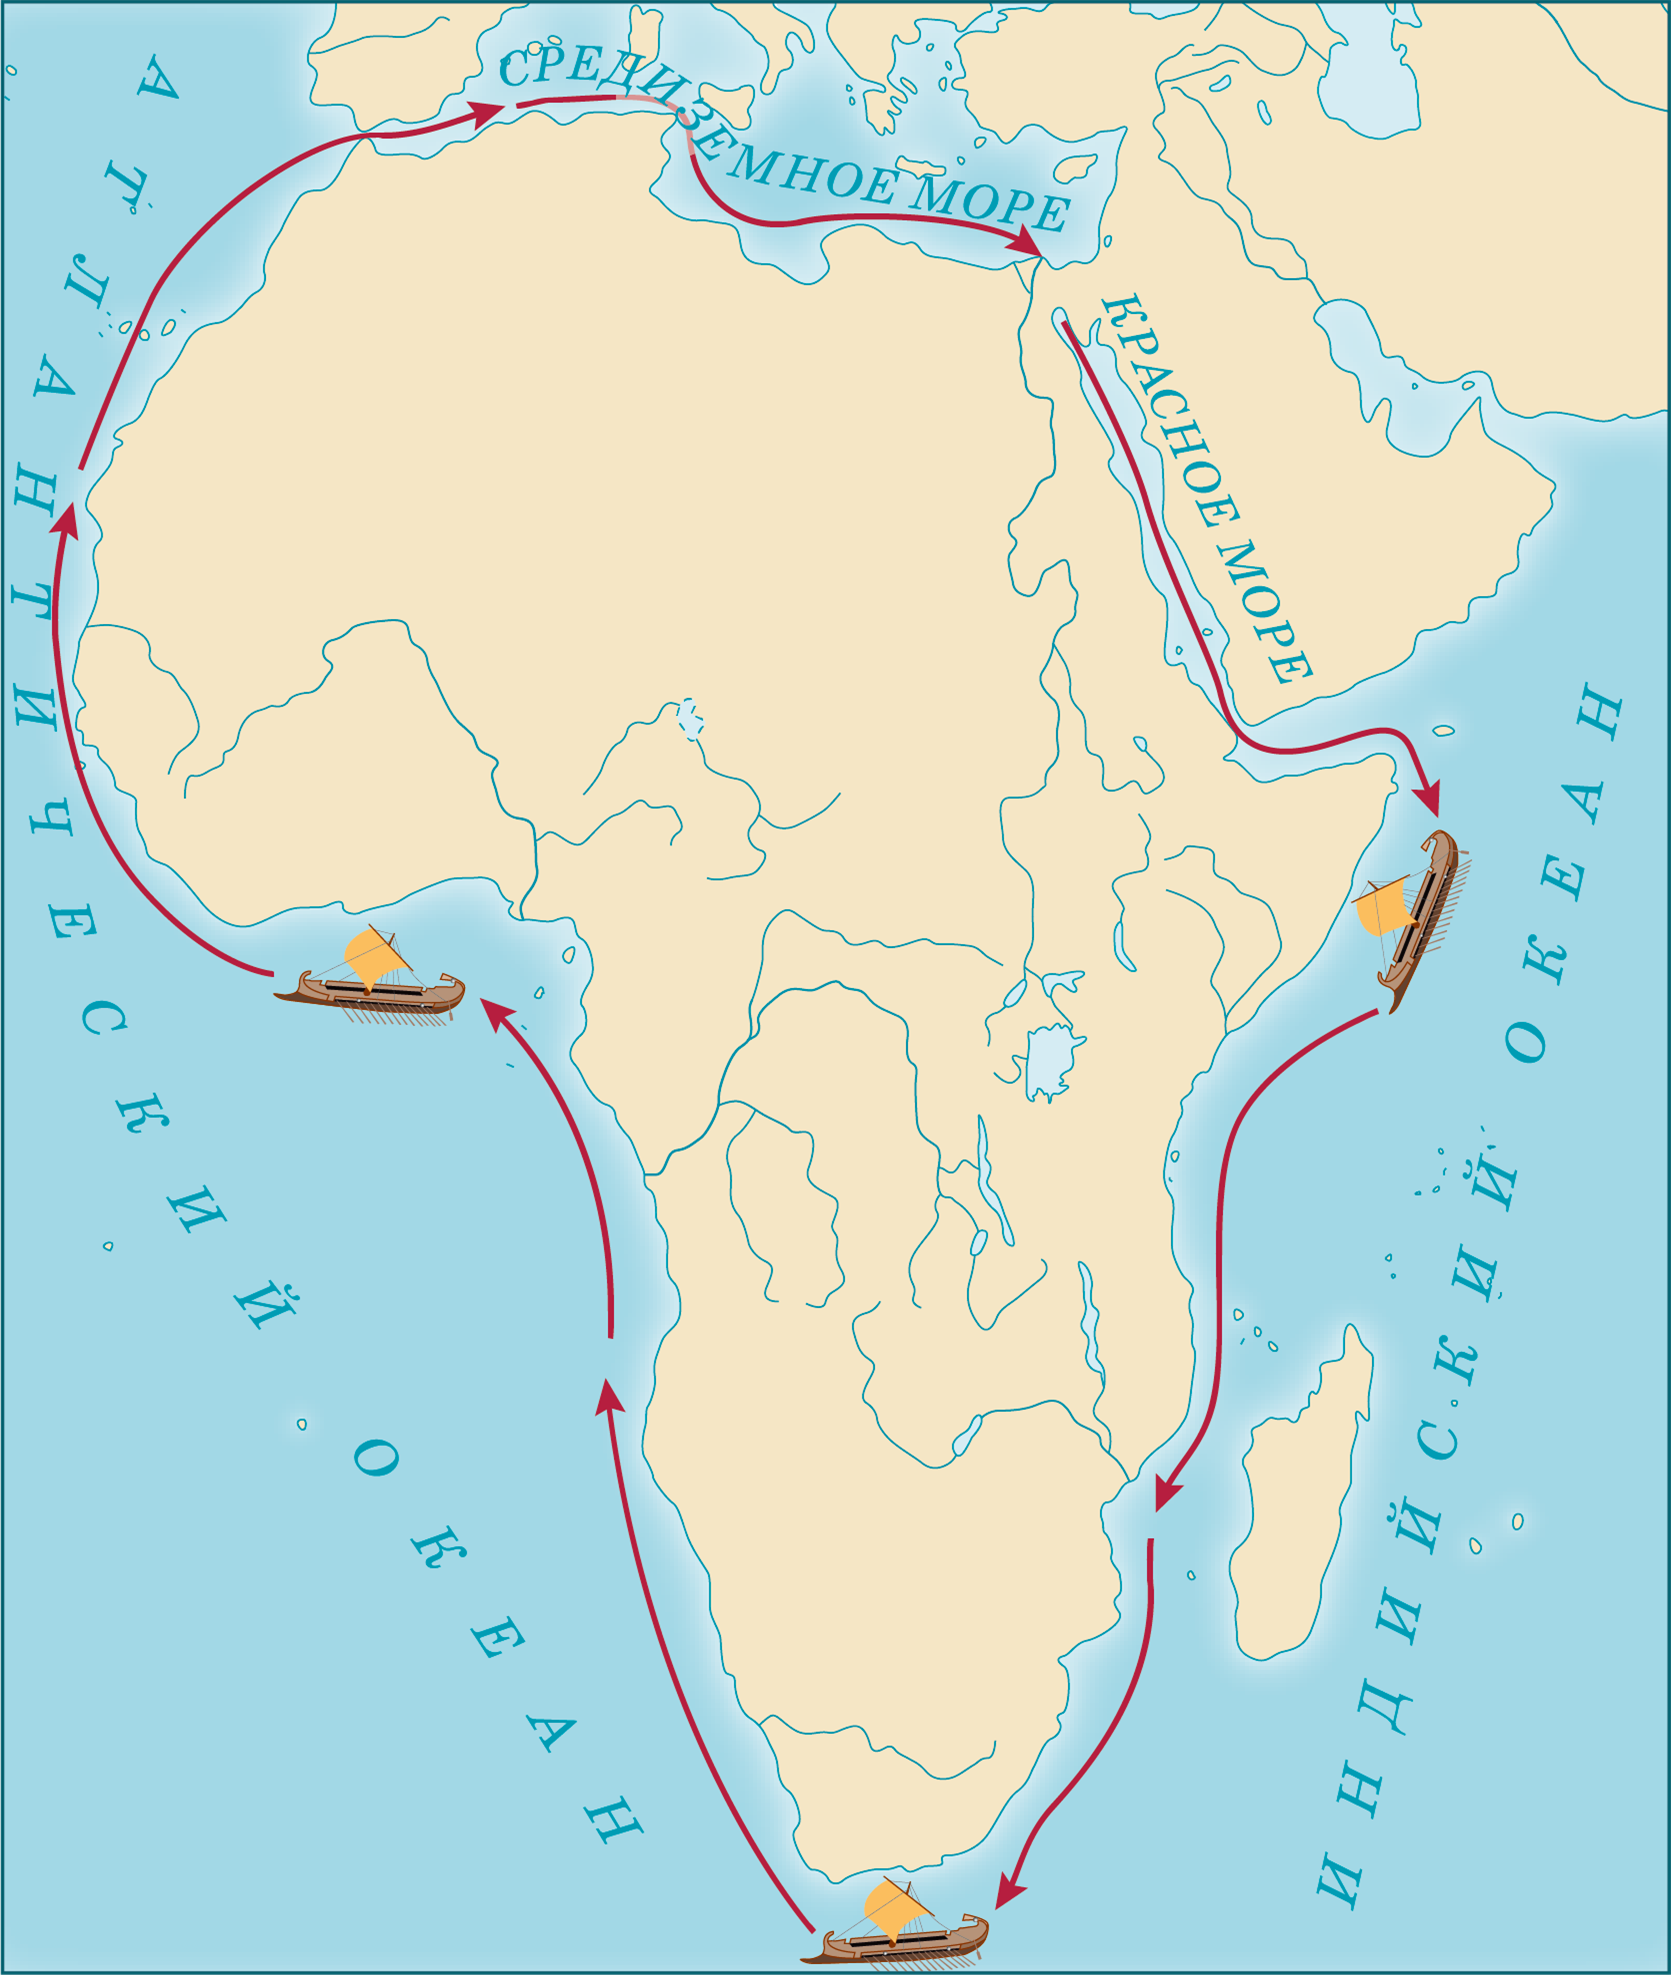 Плавание финикийцев вокруг Африки из Египта. Путь плавания финикийцев вокруг Африки. Карта путешествия финикийцев вокруг Африки. Путешествие финикийцев вокруг Африки из Египта. Финикийцев вокруг африки